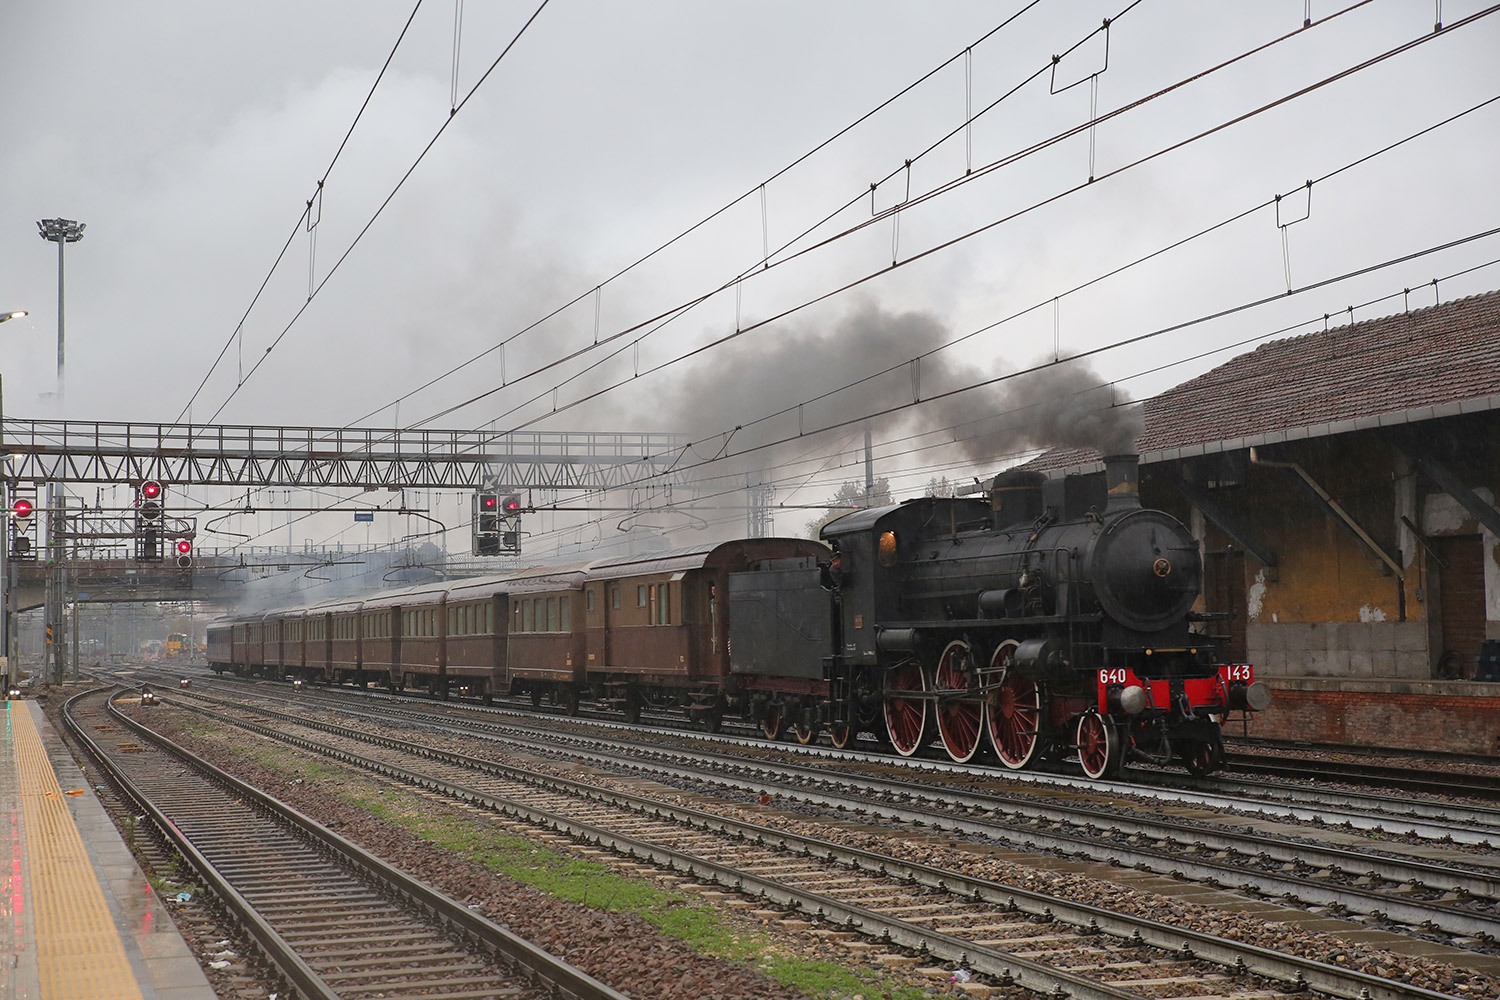 Alla fiera del Torrone di Cremona con il treno a vapore!